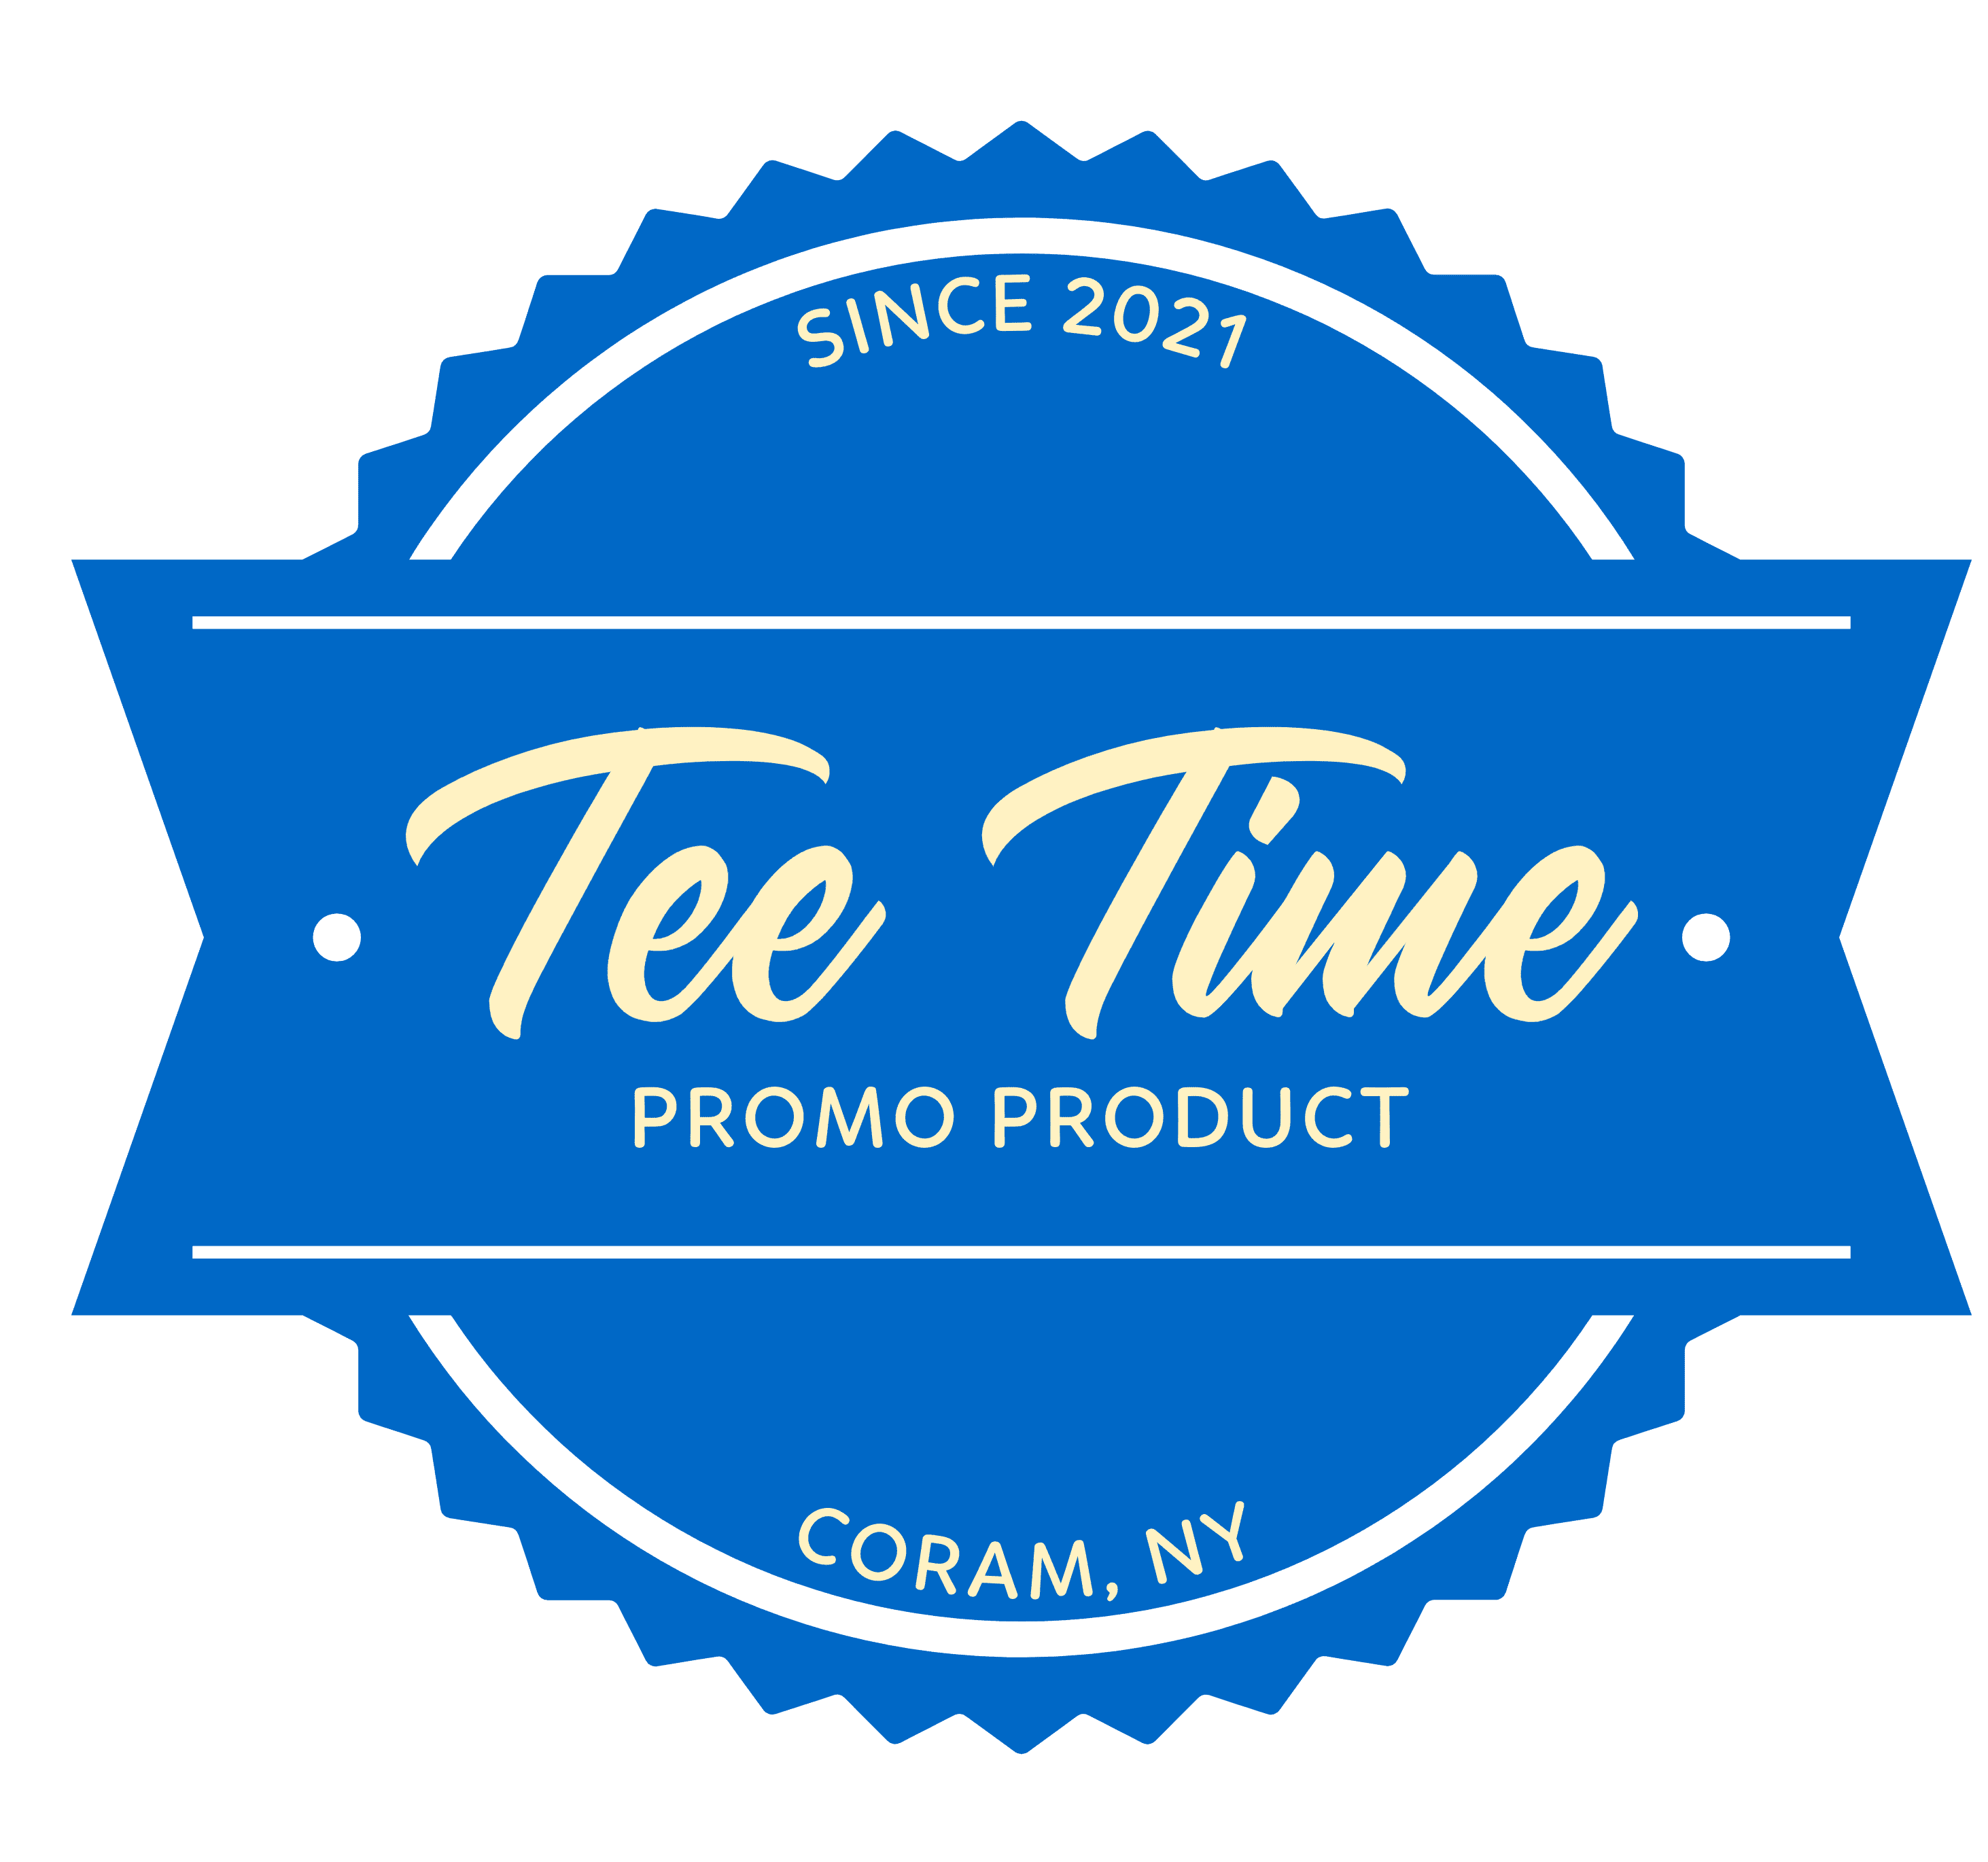 Tee Time Promo